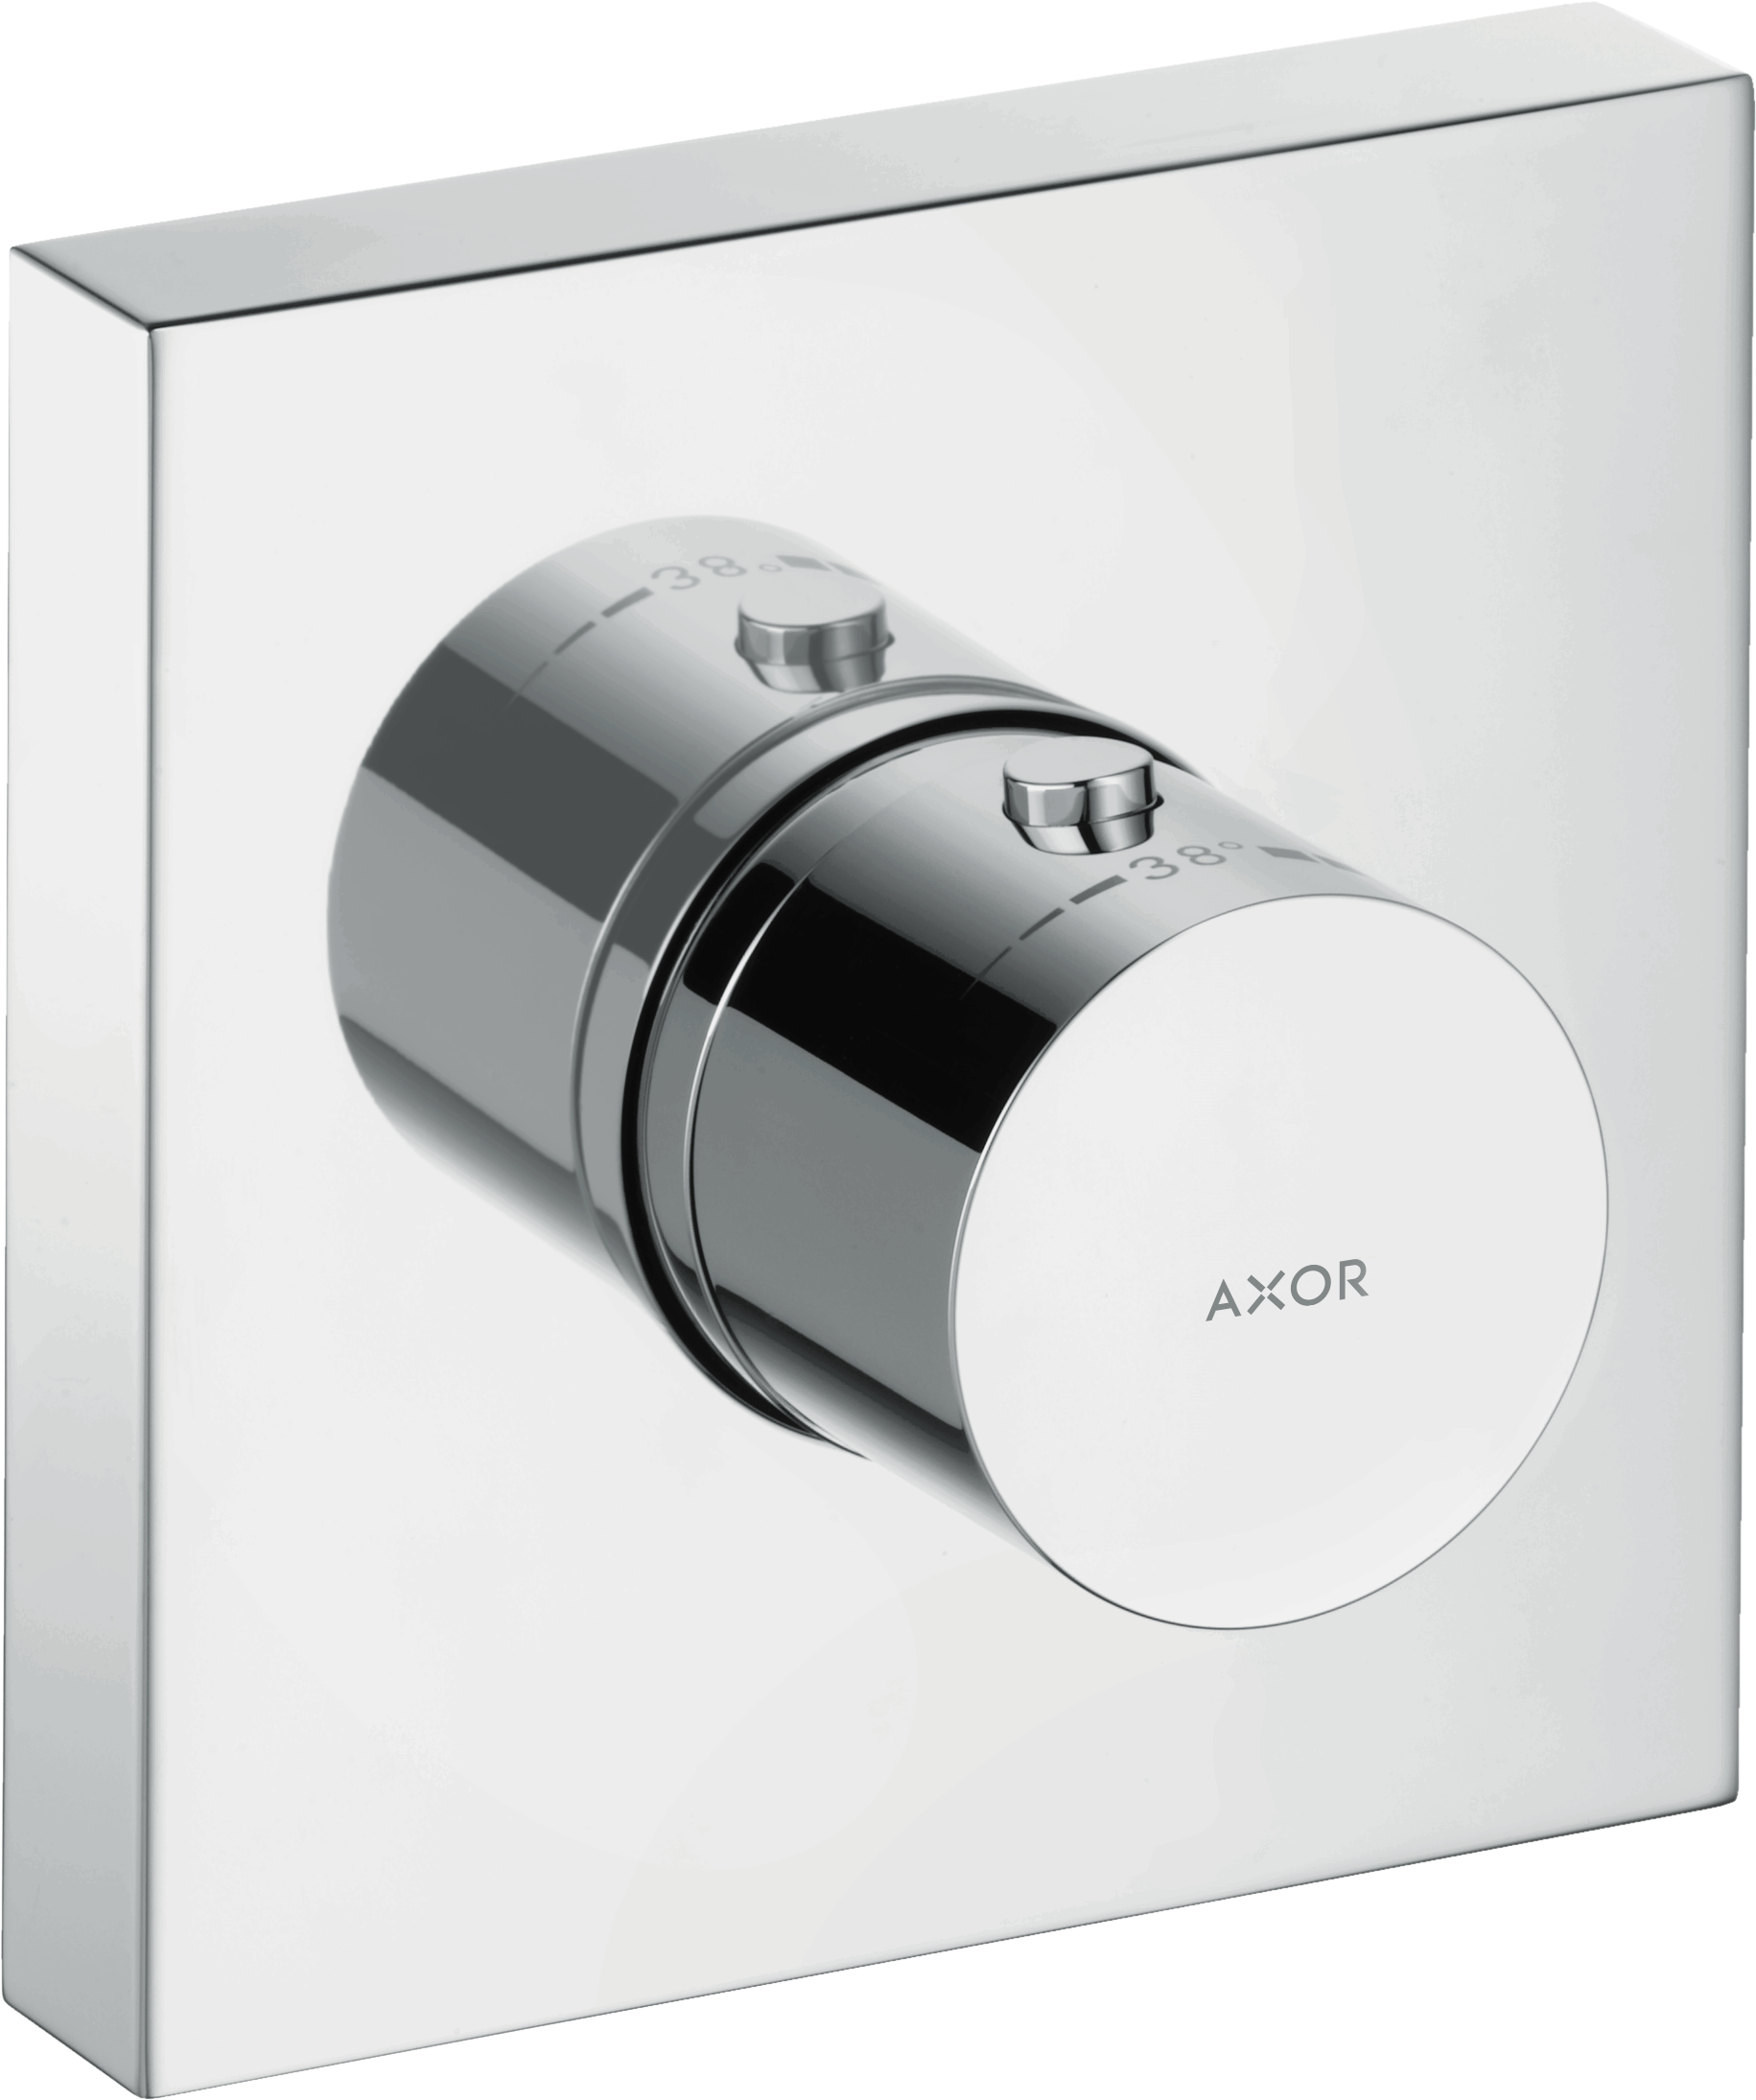 AXOR Basic set shower: AXOR ShowerSolutions